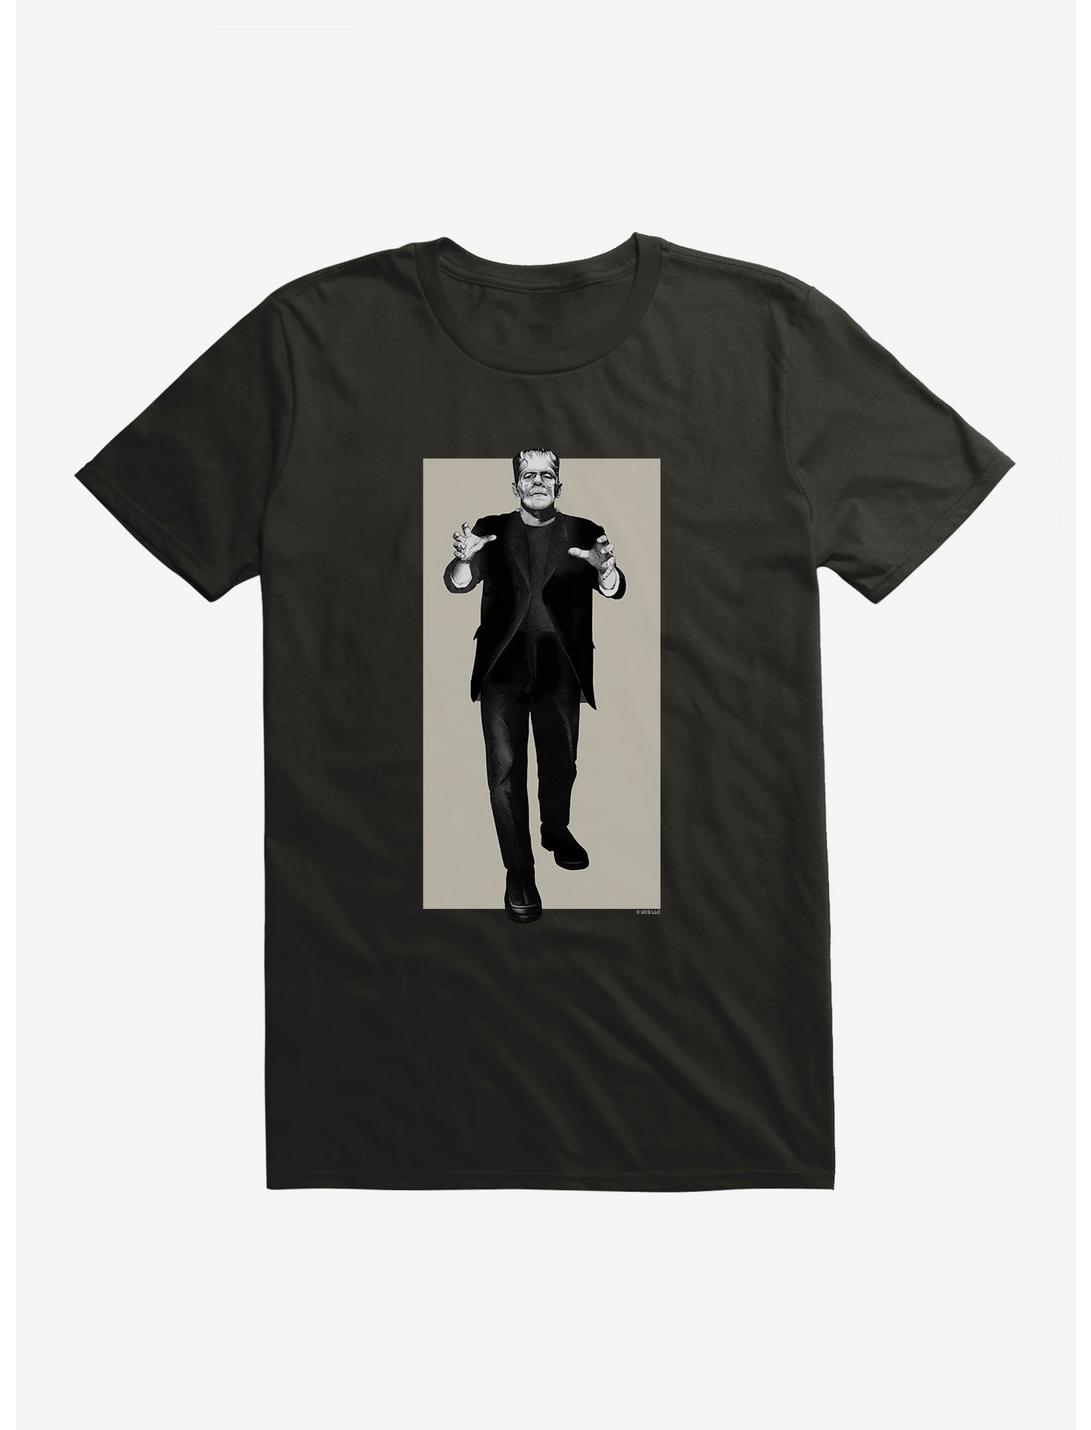 Universal Monsters Frankenstein Full Body Portrait T-Shirt, BLACK, hi-res